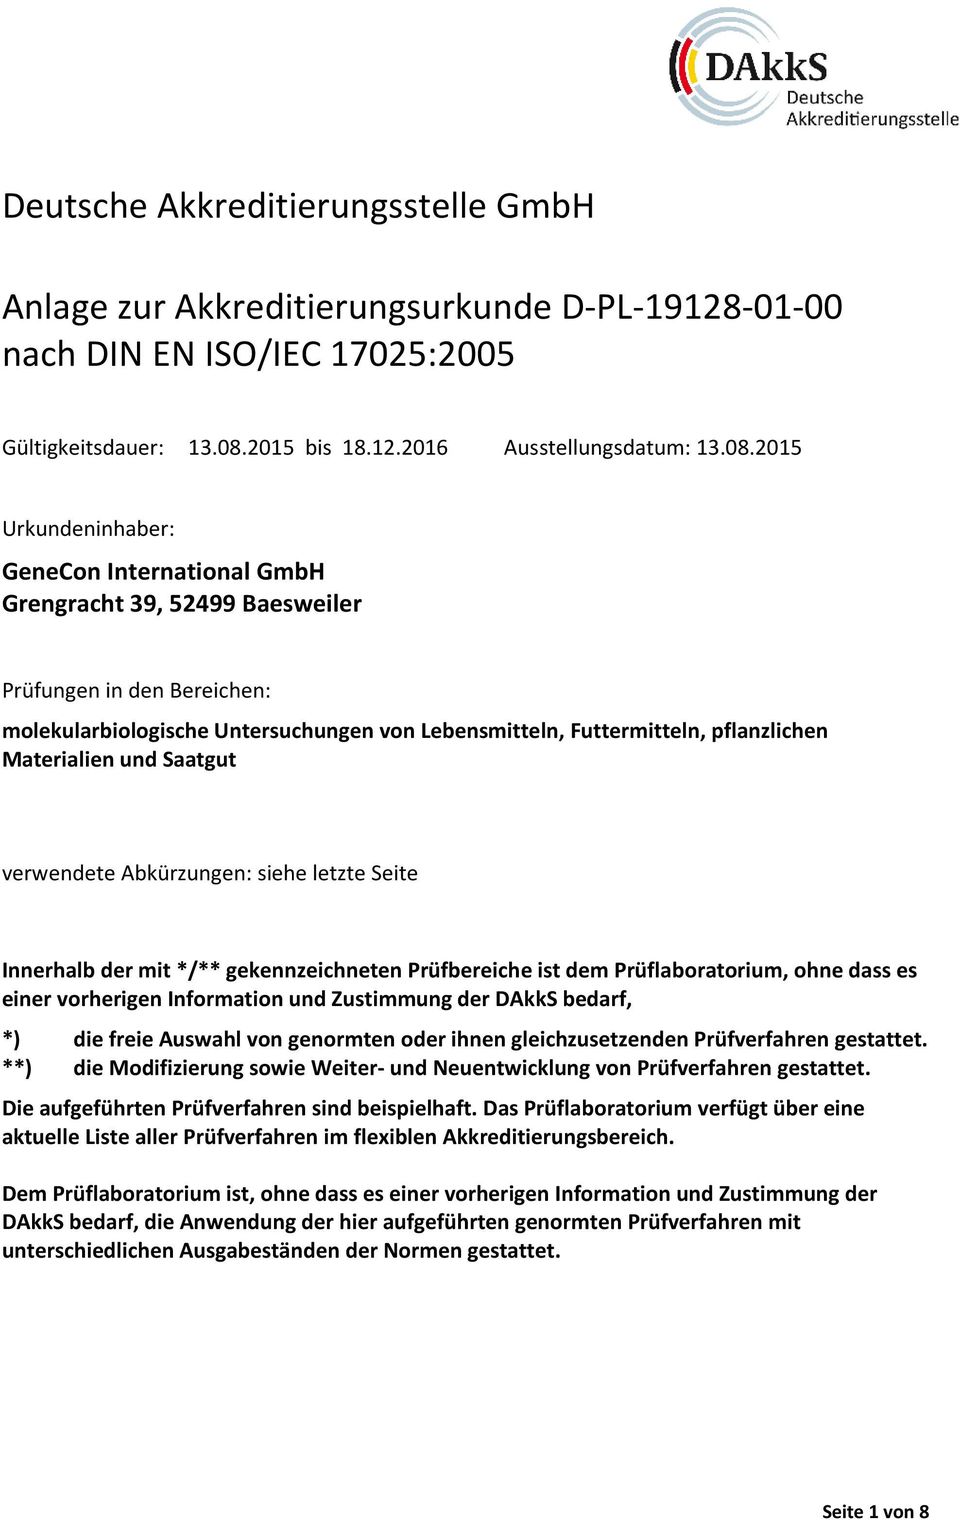 2015 Urkundeninhaber: GeneCon International GmbH Grengracht 39, 52499 Baesweiler Prüfungen in den Bereichen: molekularbiologische Untersuchungen von Lebensmitteln, Futtermitteln, pflanzlichen